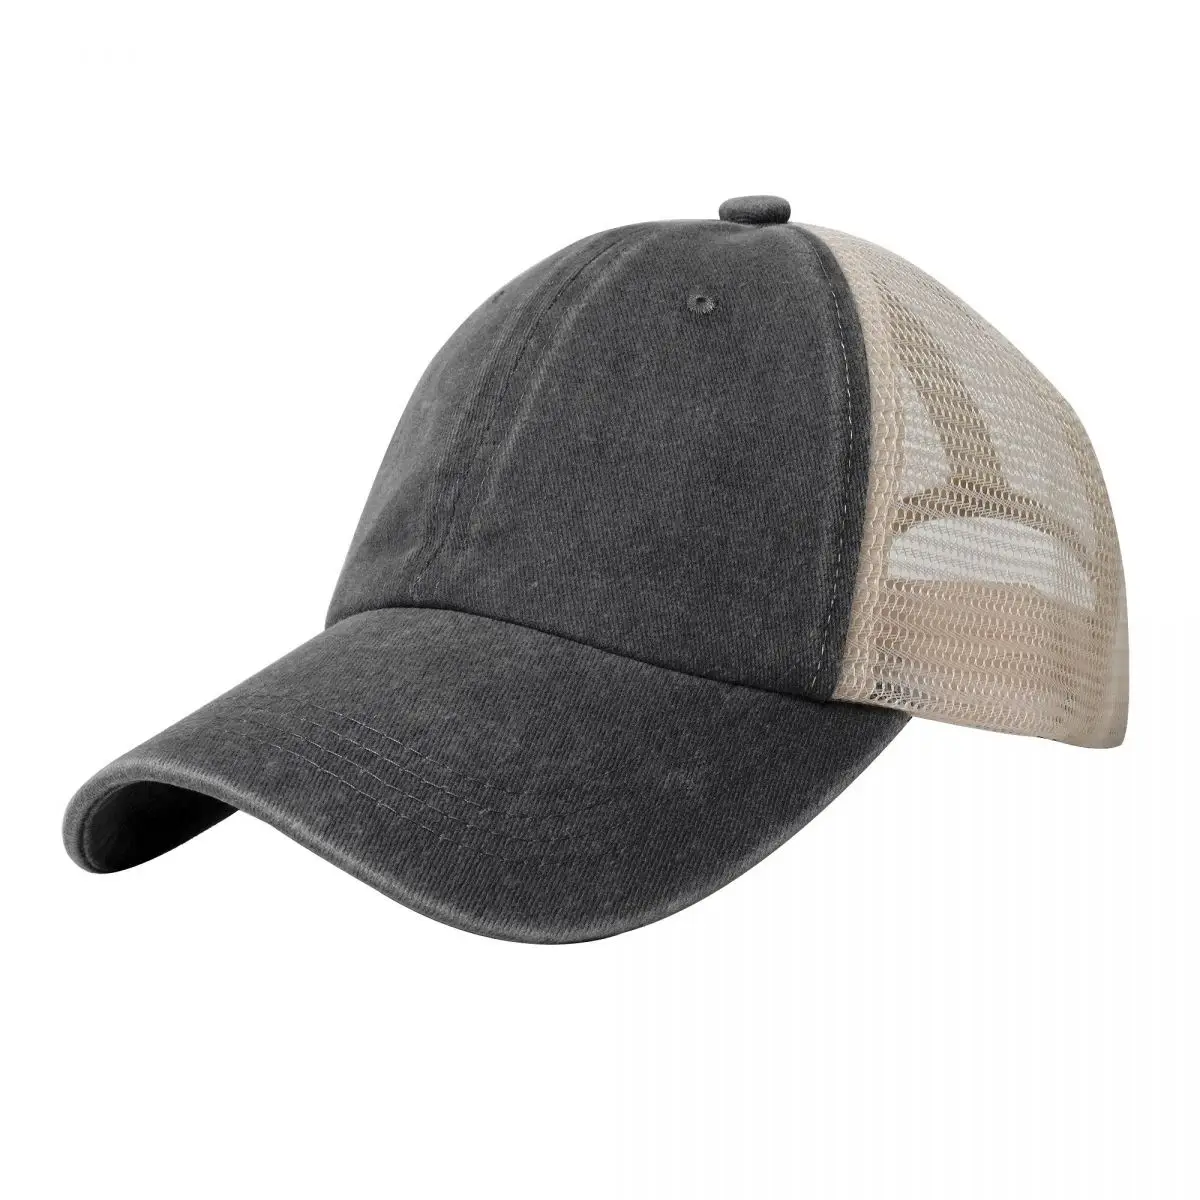 

BLANK Cowboy Mesh Baseball Cap hard hat Thermal Visor Fluffy Hat Caps For Men Women's